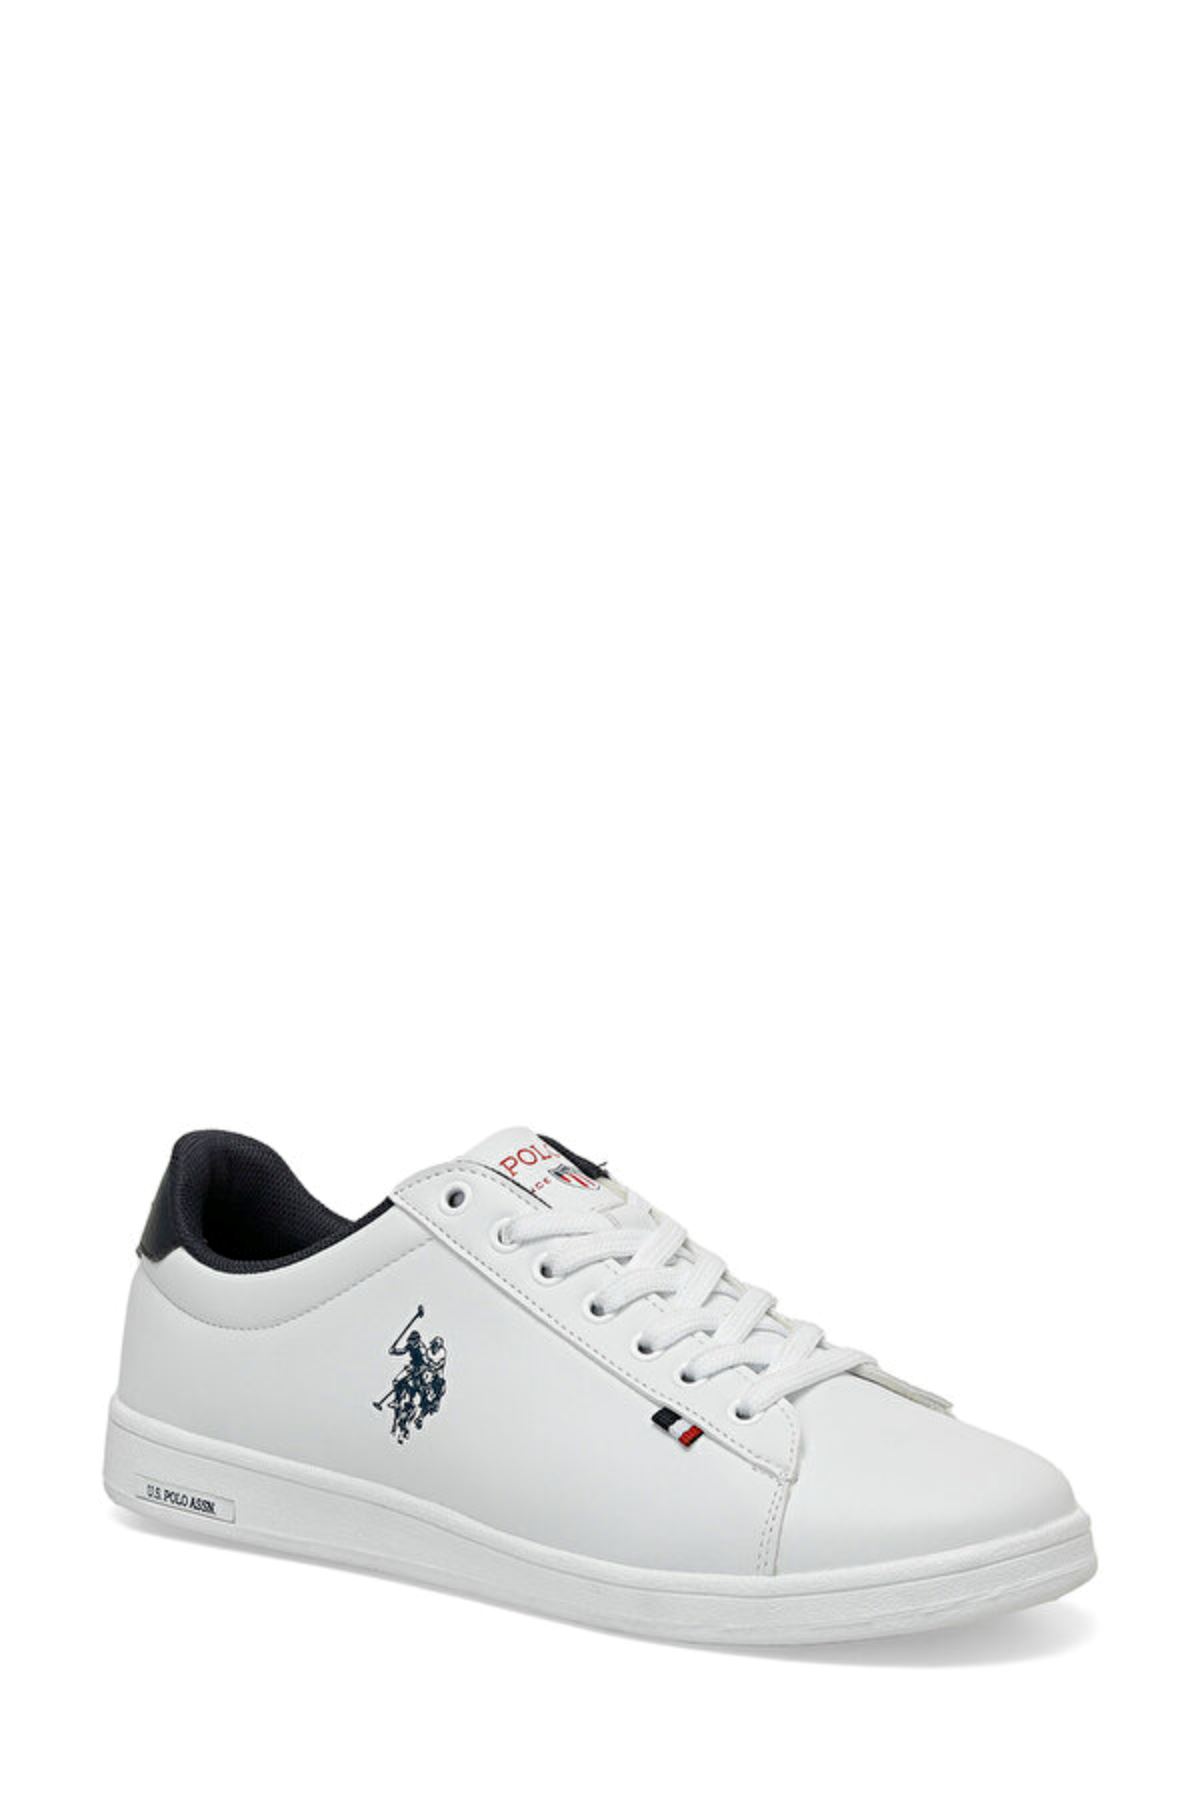 Franco 4Fx U.S. Polo Assn. Erkek Beyaz Spor Ayakkabı - 101513447